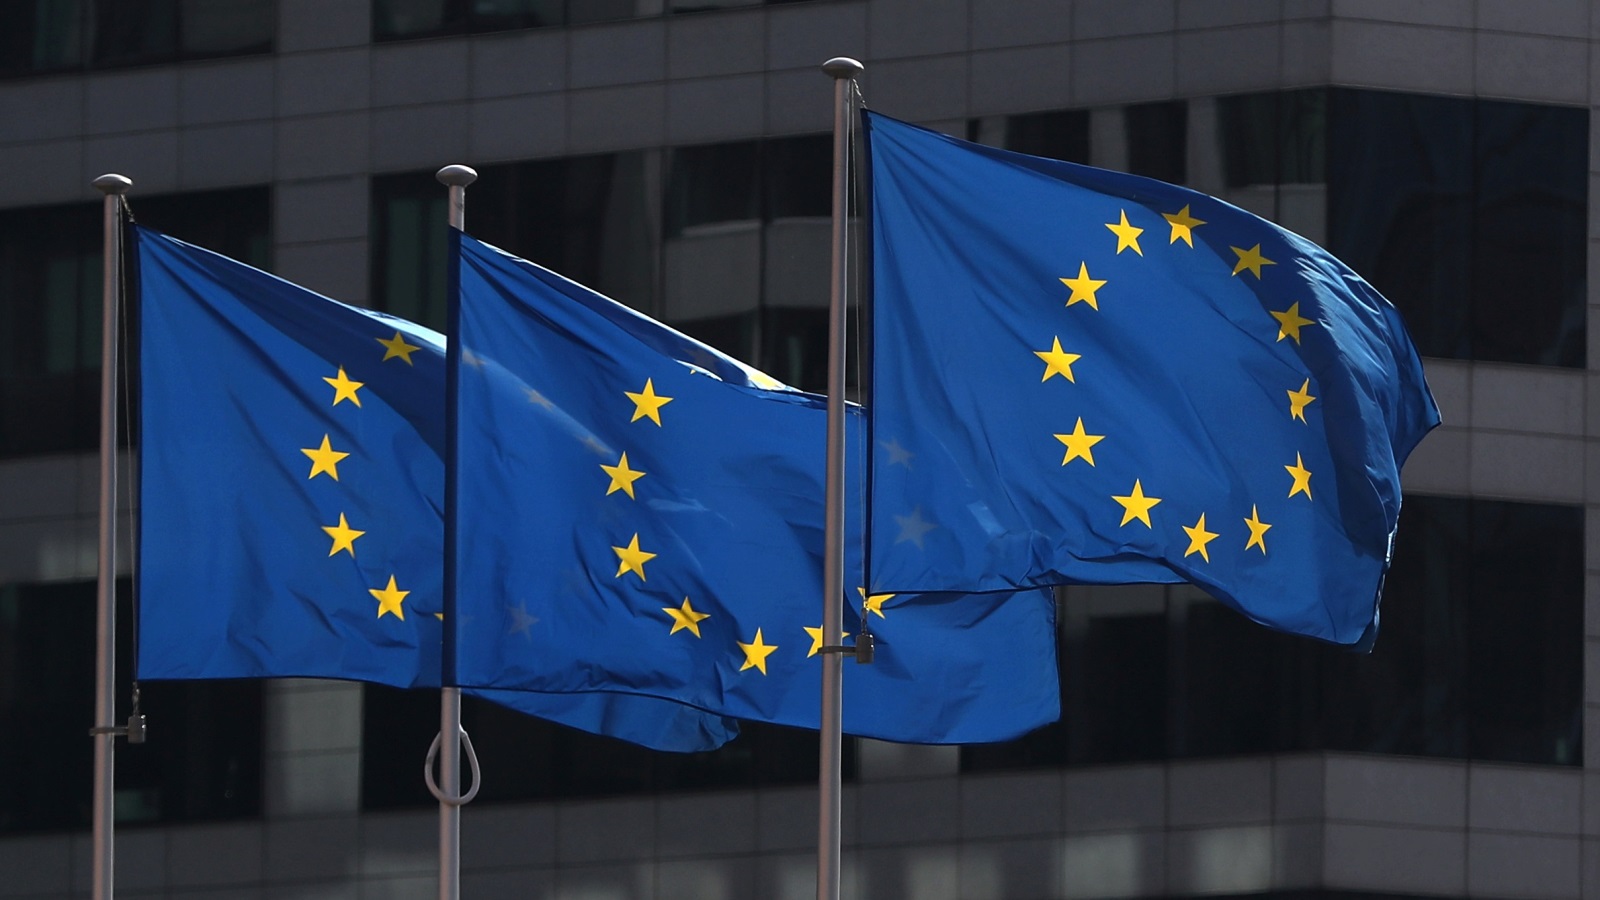  المسار المتعثر للمفاوضات يتواصل بين الاتحاد الأوروبي وحكومة جونوسون بتبادل الاتهامات وفرض شروط تعجيزية (رويترز)